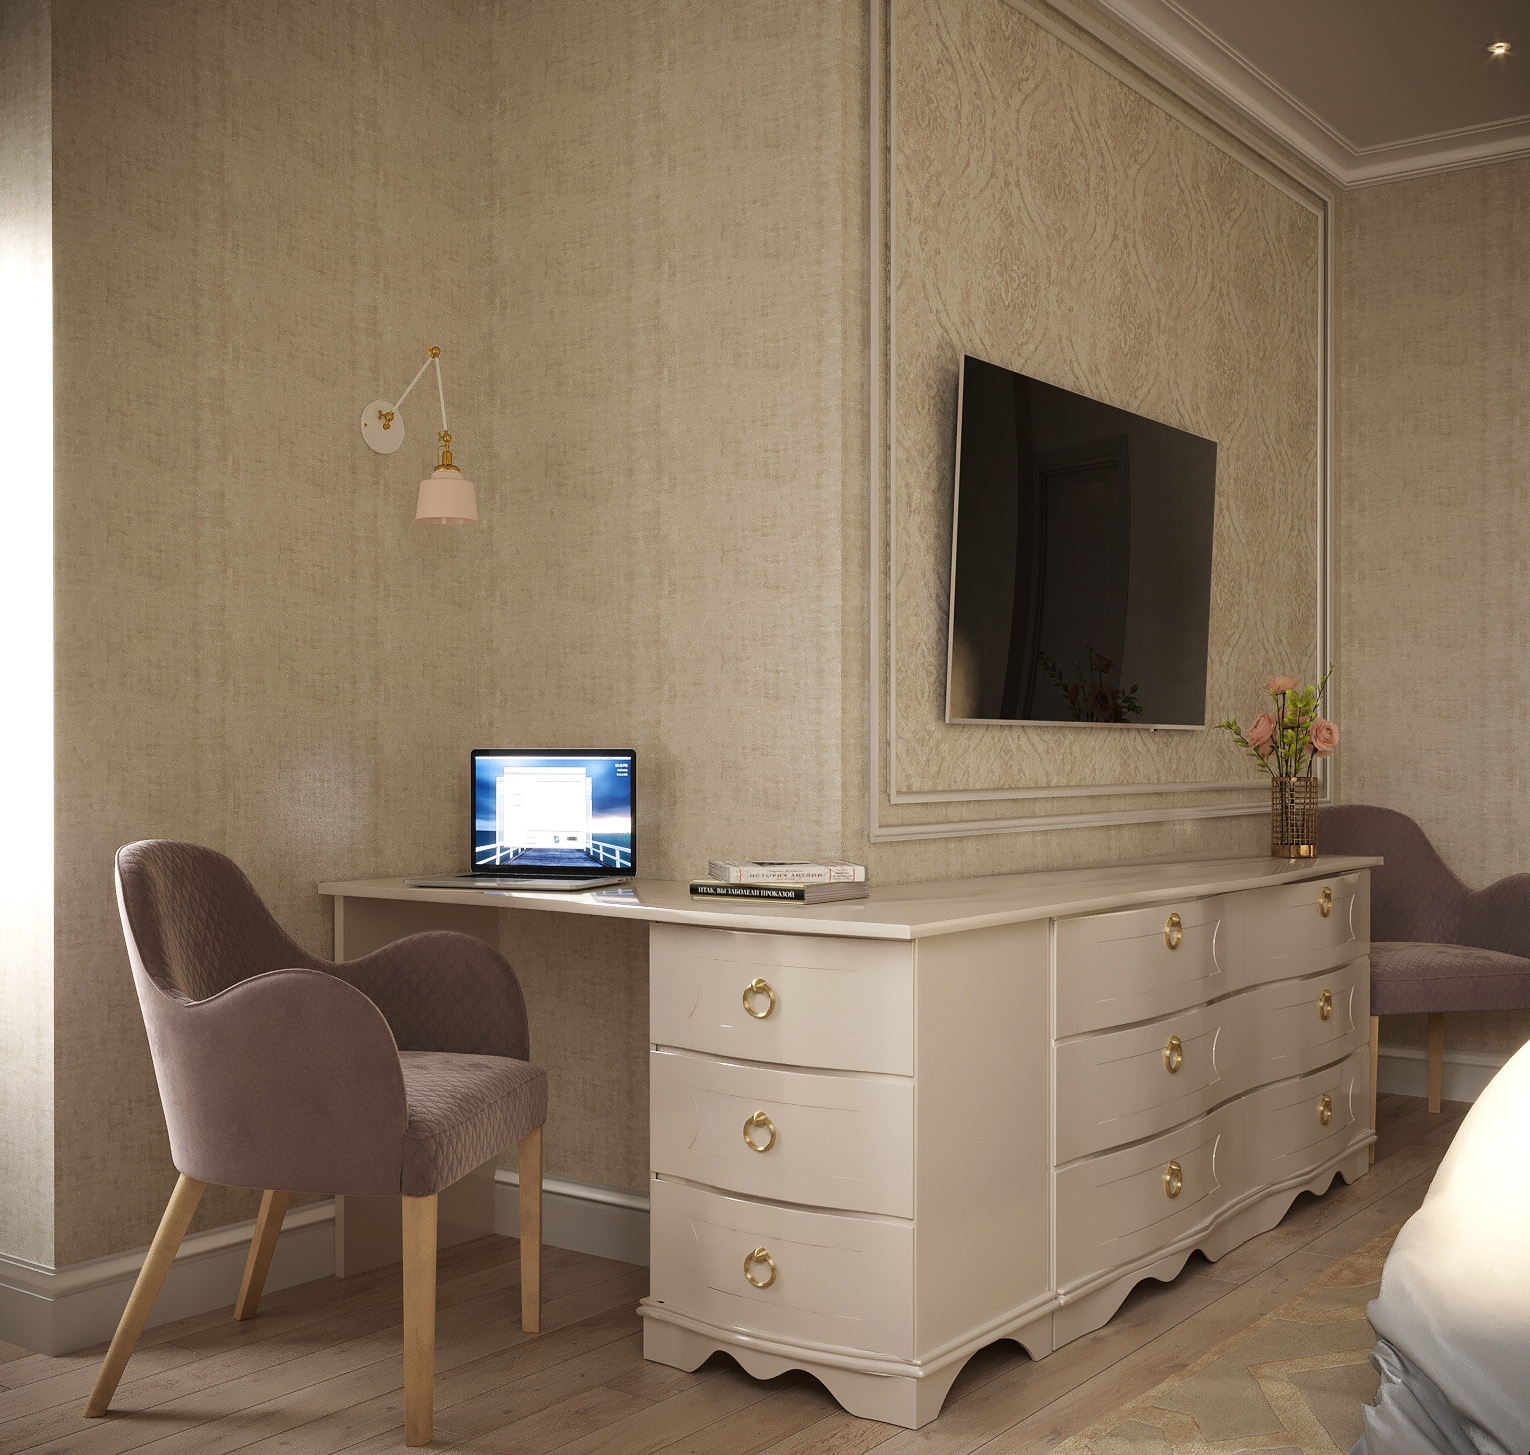 Klasik tarz yatak odası in 3d max corona render resim